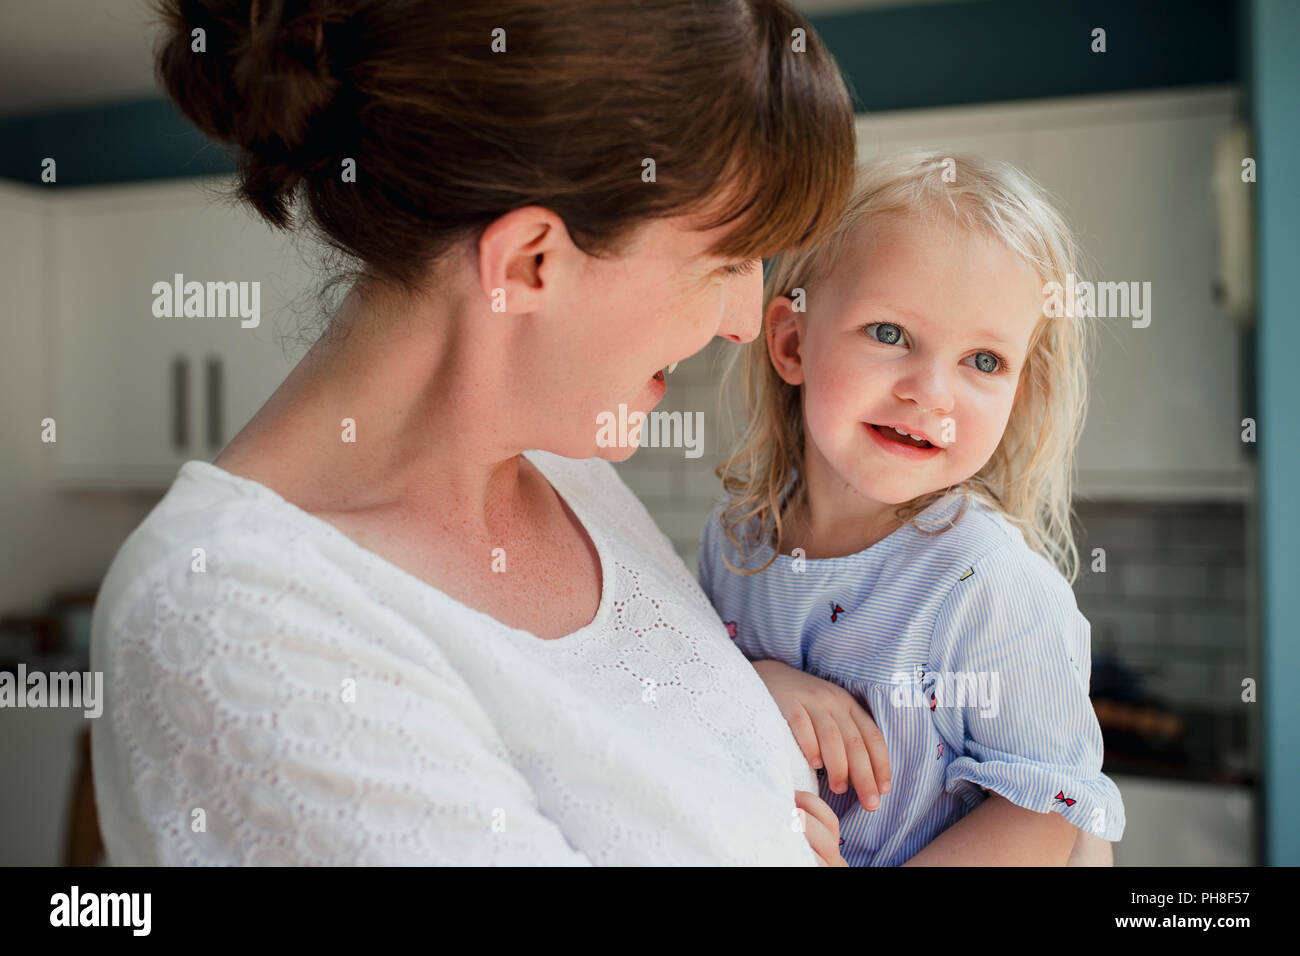 Seitenansicht einer Mutter sprechen und ein Lächeln auf Ihre Tochter, die auch lächelt. Mitte der erwachsenen Mutter hielt ihre Tochter und der Fürsorge für ihre. Stockfoto